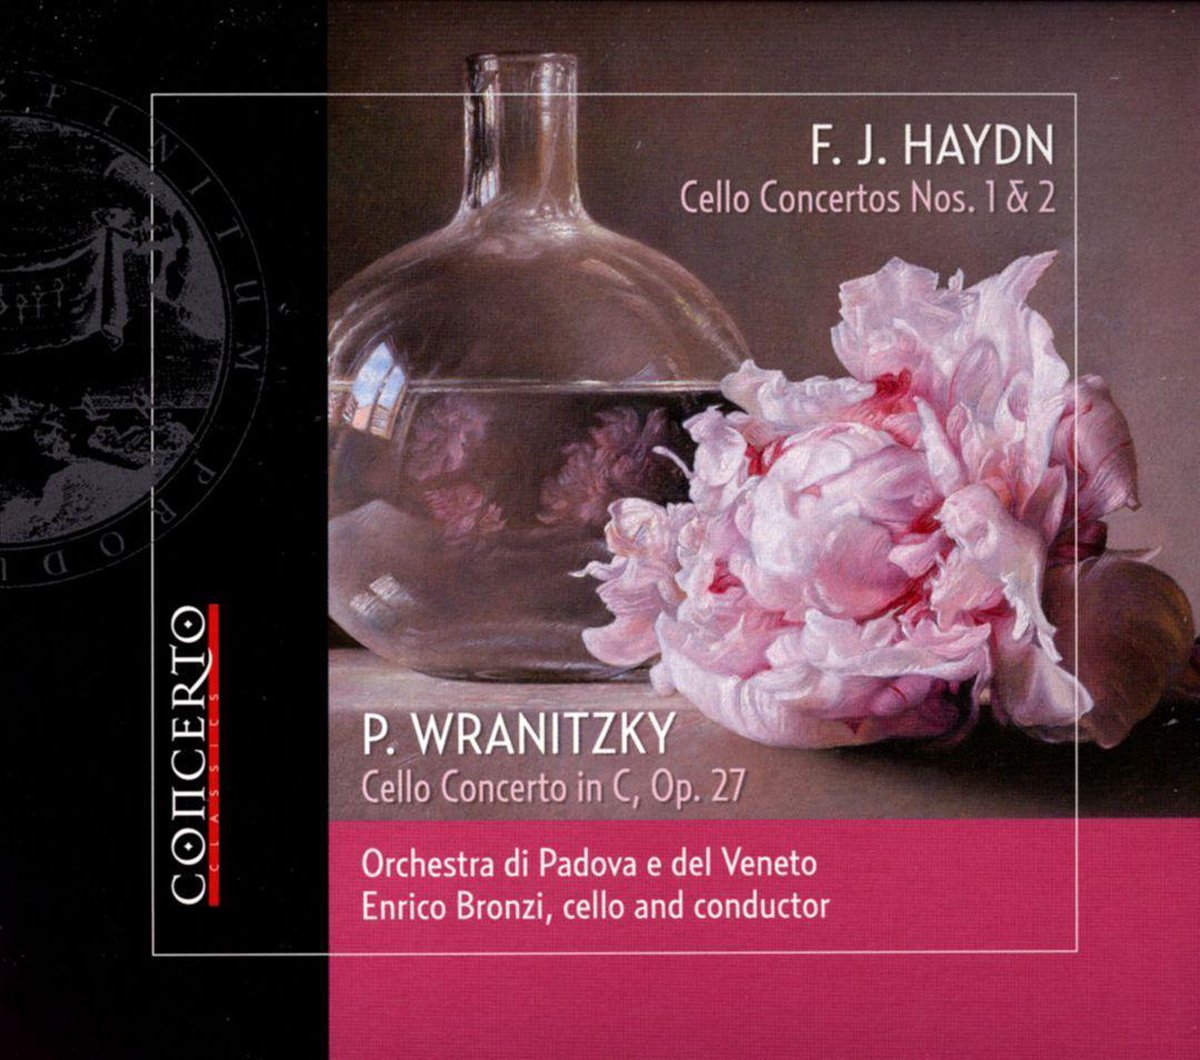 F.J. Haydn: Cello Concertos Nos. 1 & 2; P. Wranitzky: Cello Concerto in C, Op. 27 - Enrico Bronzi